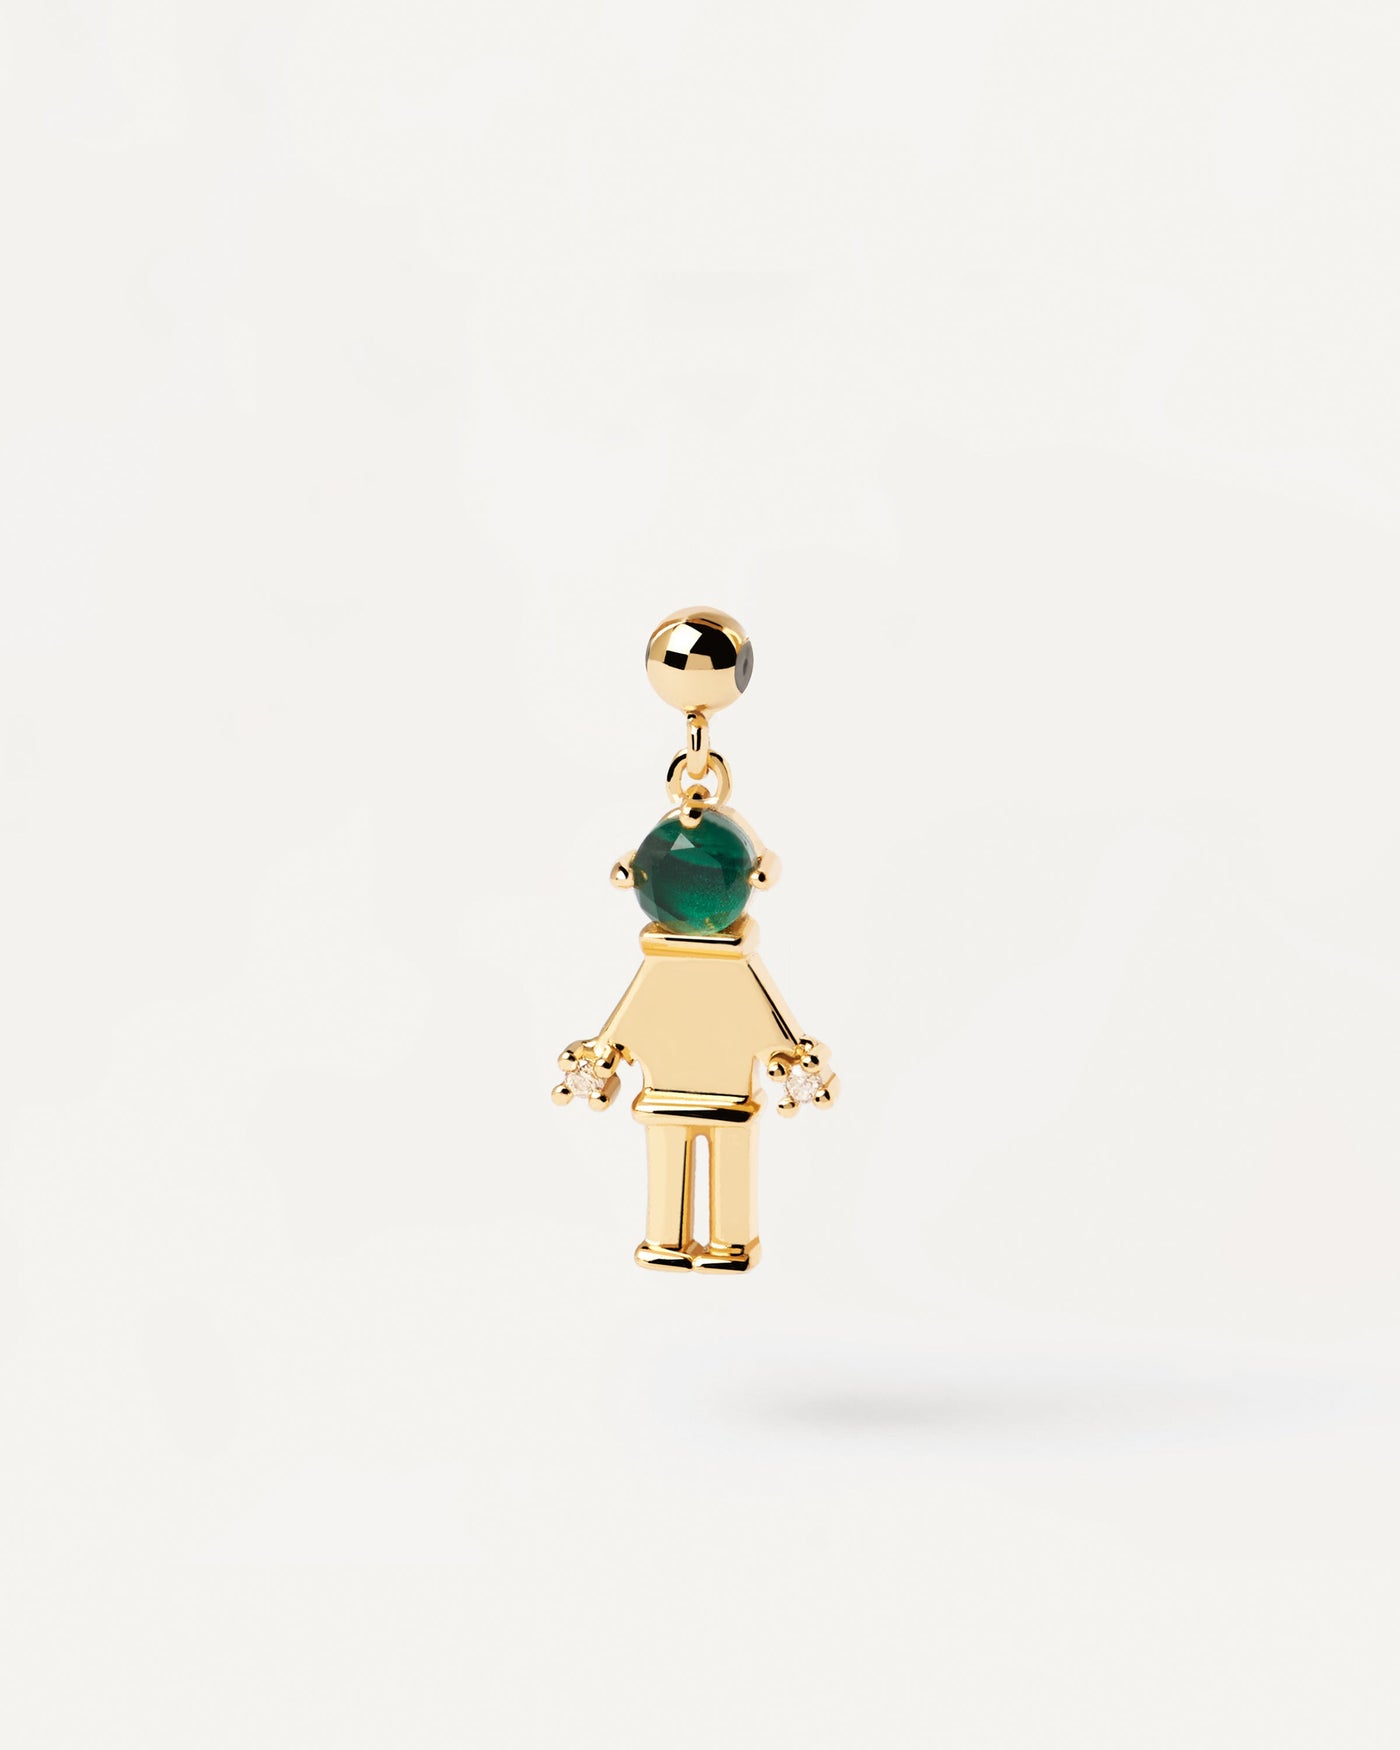 Charm Girl & Boy. Charm „Figur“ aus vergoldetem Silber mit grünem Edelstein für Halskette oder Armband. Erhalten Sie die neuesten Produkte von PDPAOLA. Geben Sie Ihre Bestellung sicher auf und erhalten Sie diesen Bestseller.